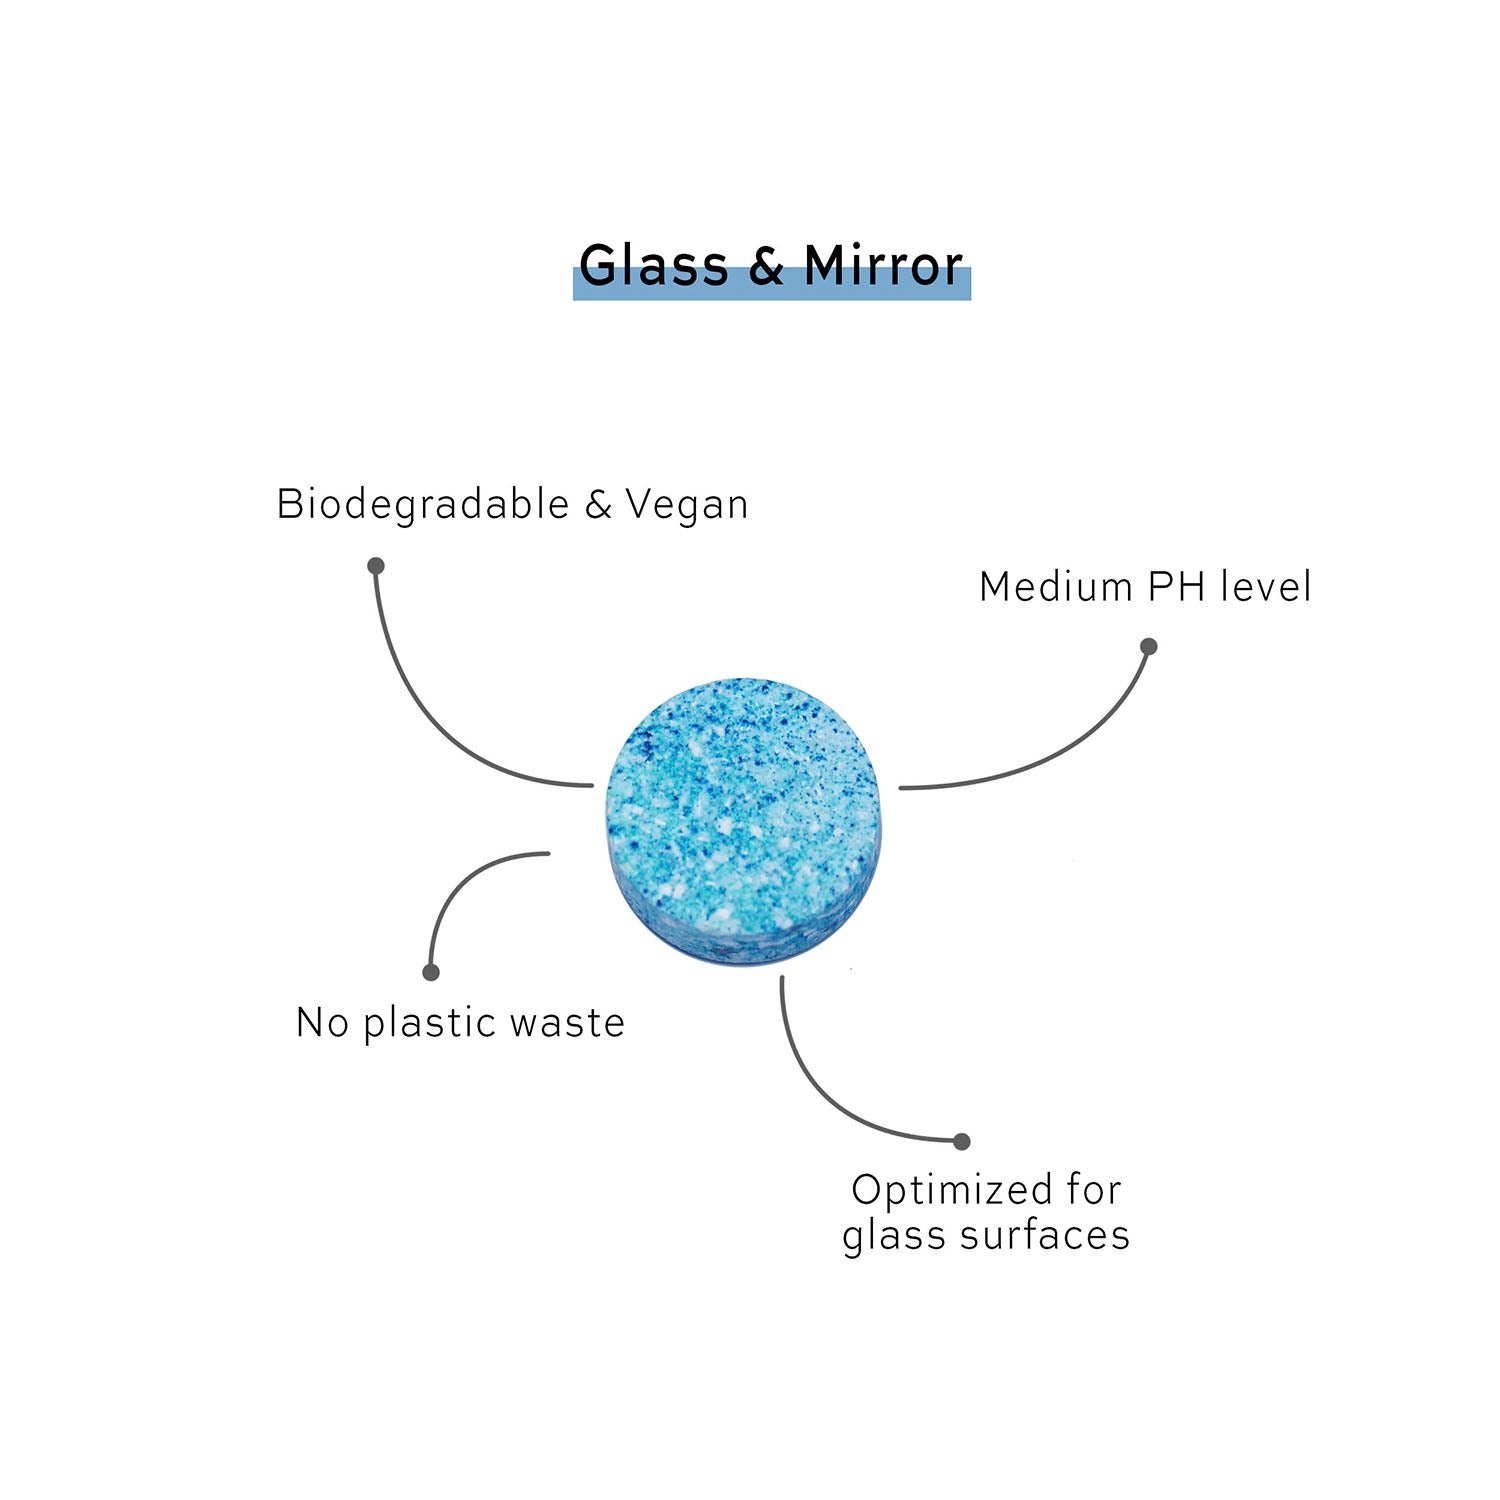 1 Skosh rengöringstablett för glas och fönster - biodynamiskt nedbrytbar och vegansk, medium PH-värde, inget plastavfall, optimerad för glasytor